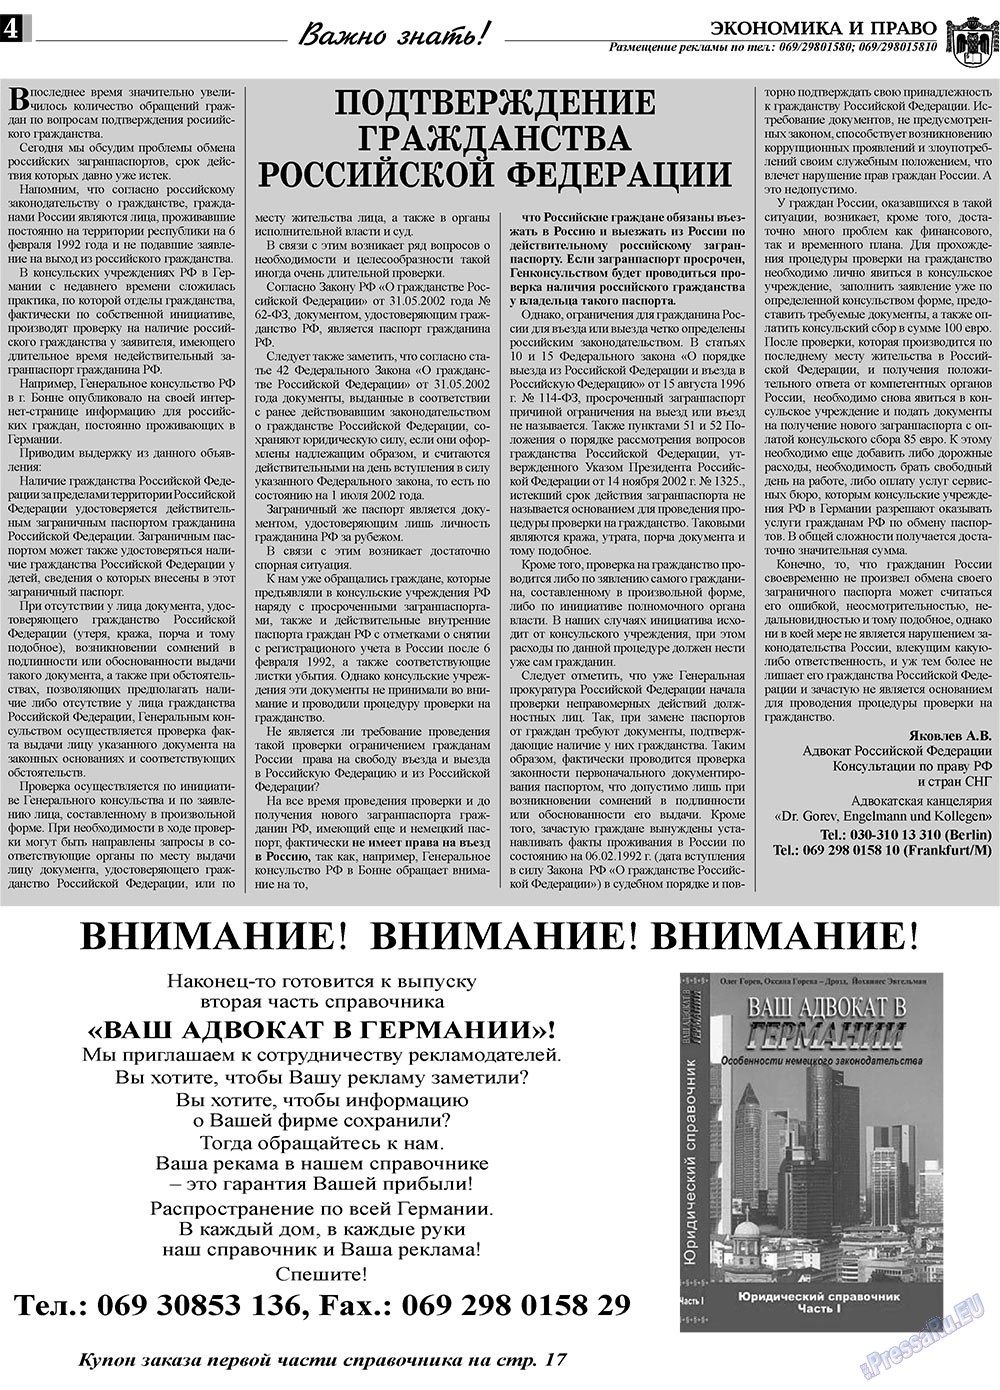 Экономика и право, газета. 2010 №2 стр.4